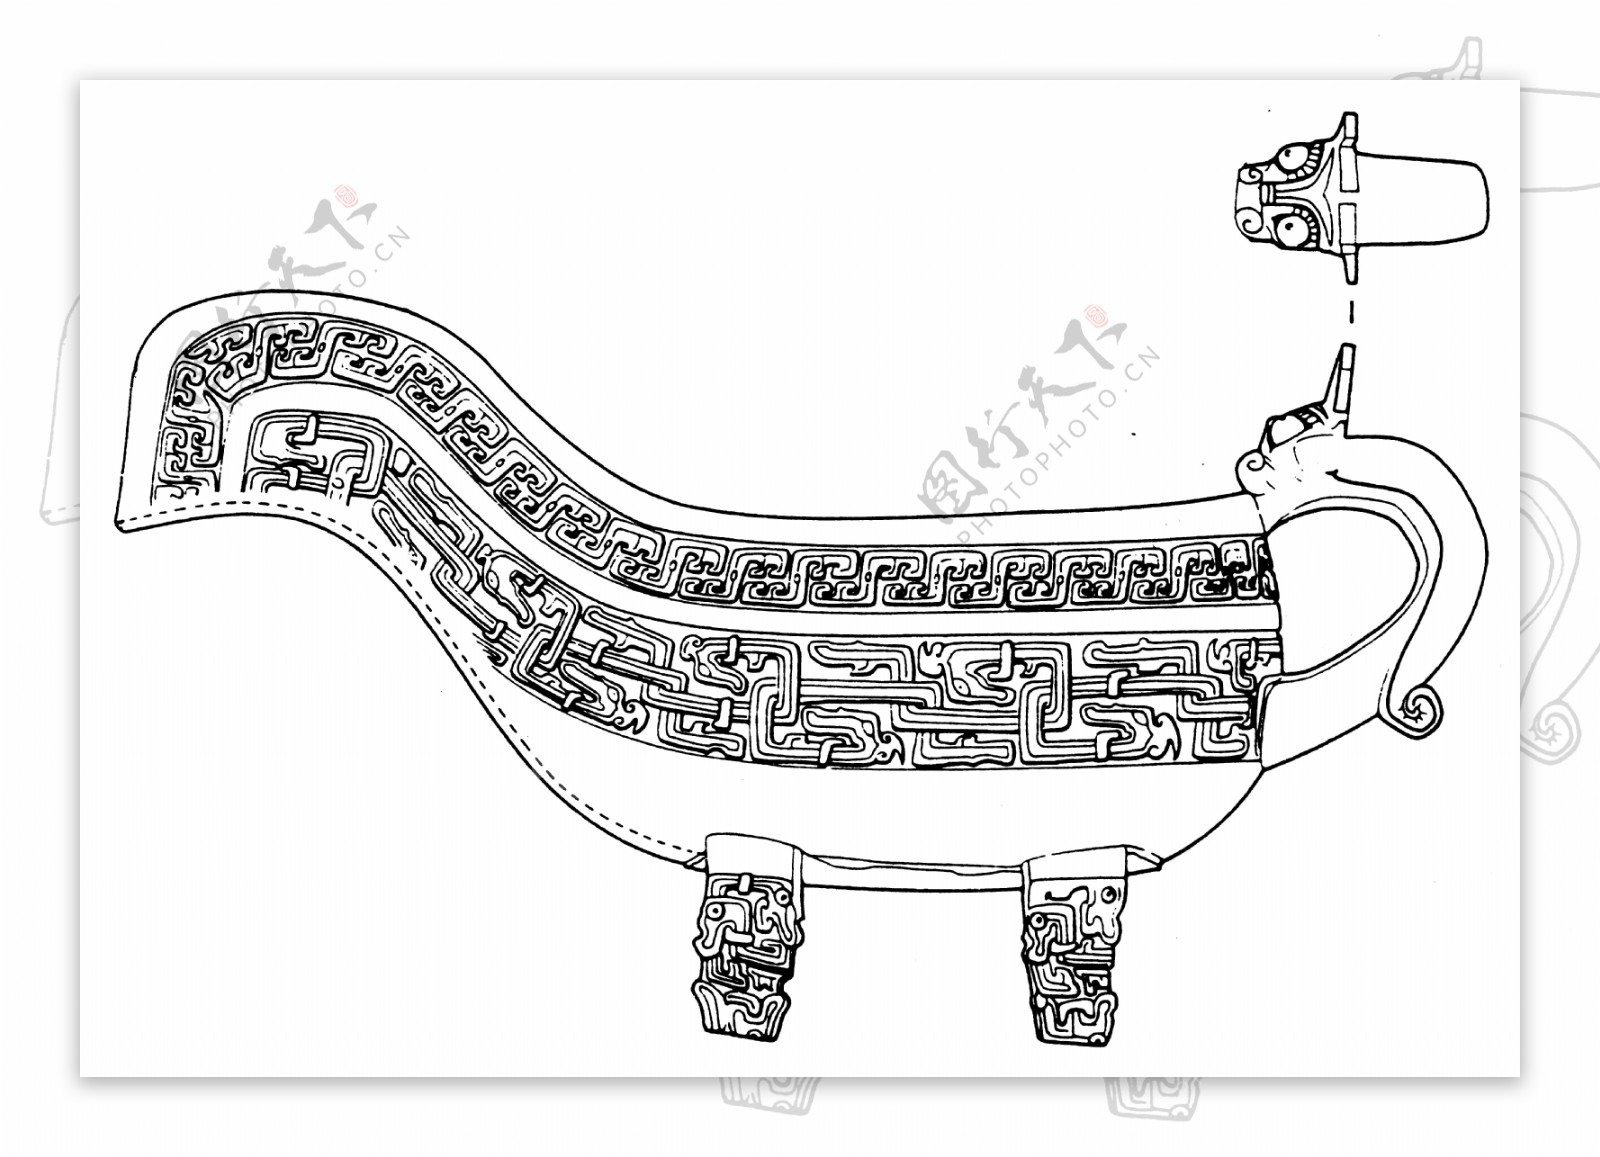 春秋战国图案青铜器图案中国传统图案098